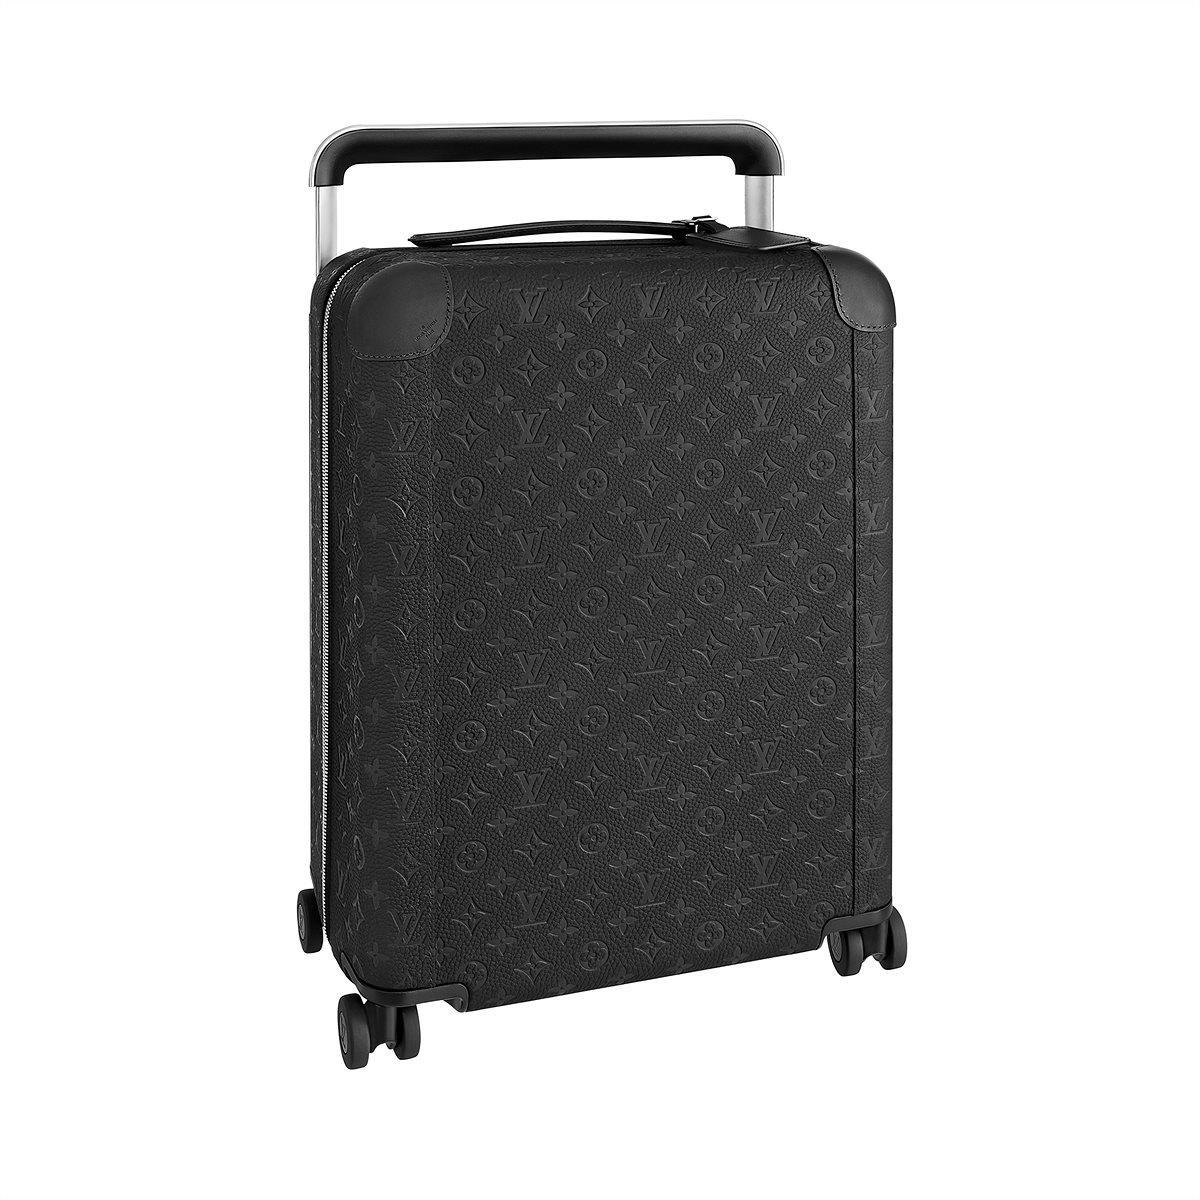 LV_Horizon 55 Suitcase_EUR 3500,00